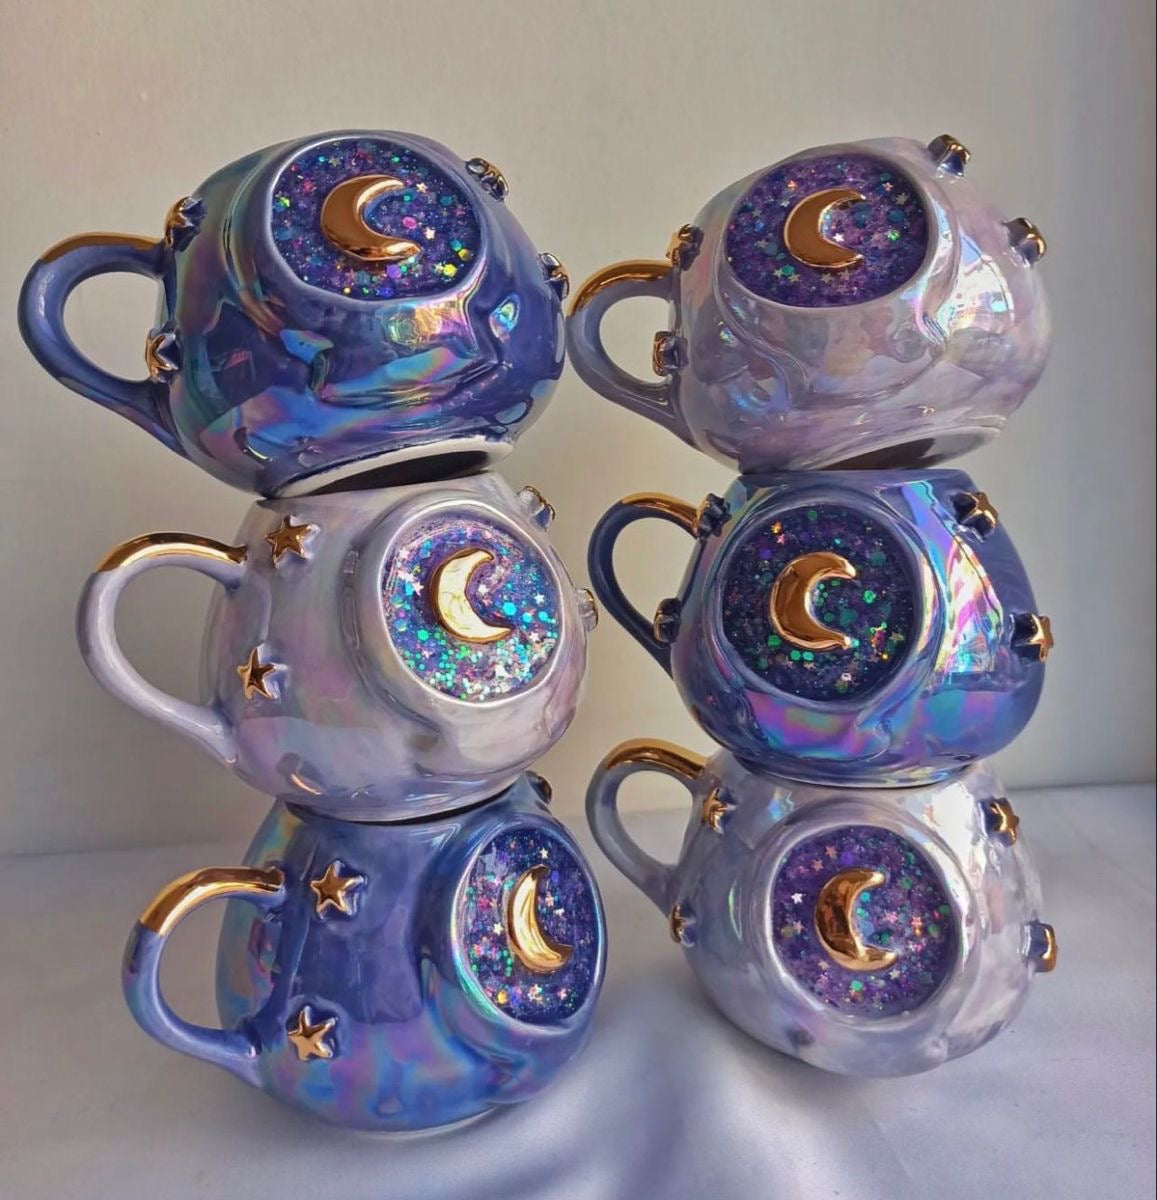 Celestial Sparkle Ceramic Mug